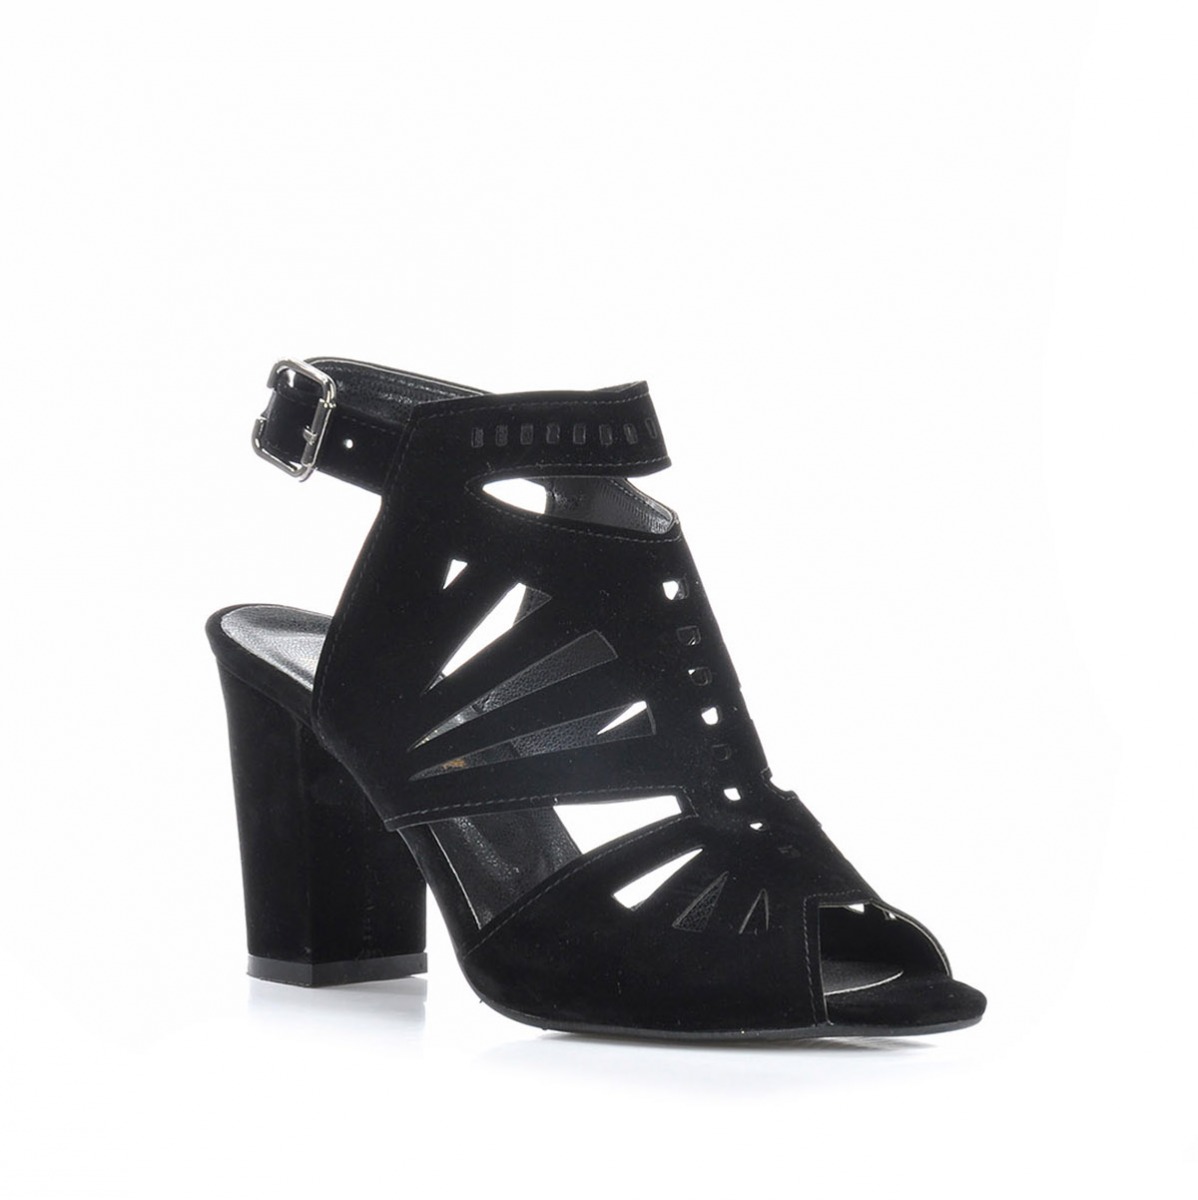 Flo Kadın  Siyah-Süet Klasik Topuklu Ayakkabı VZN-229Y. 2